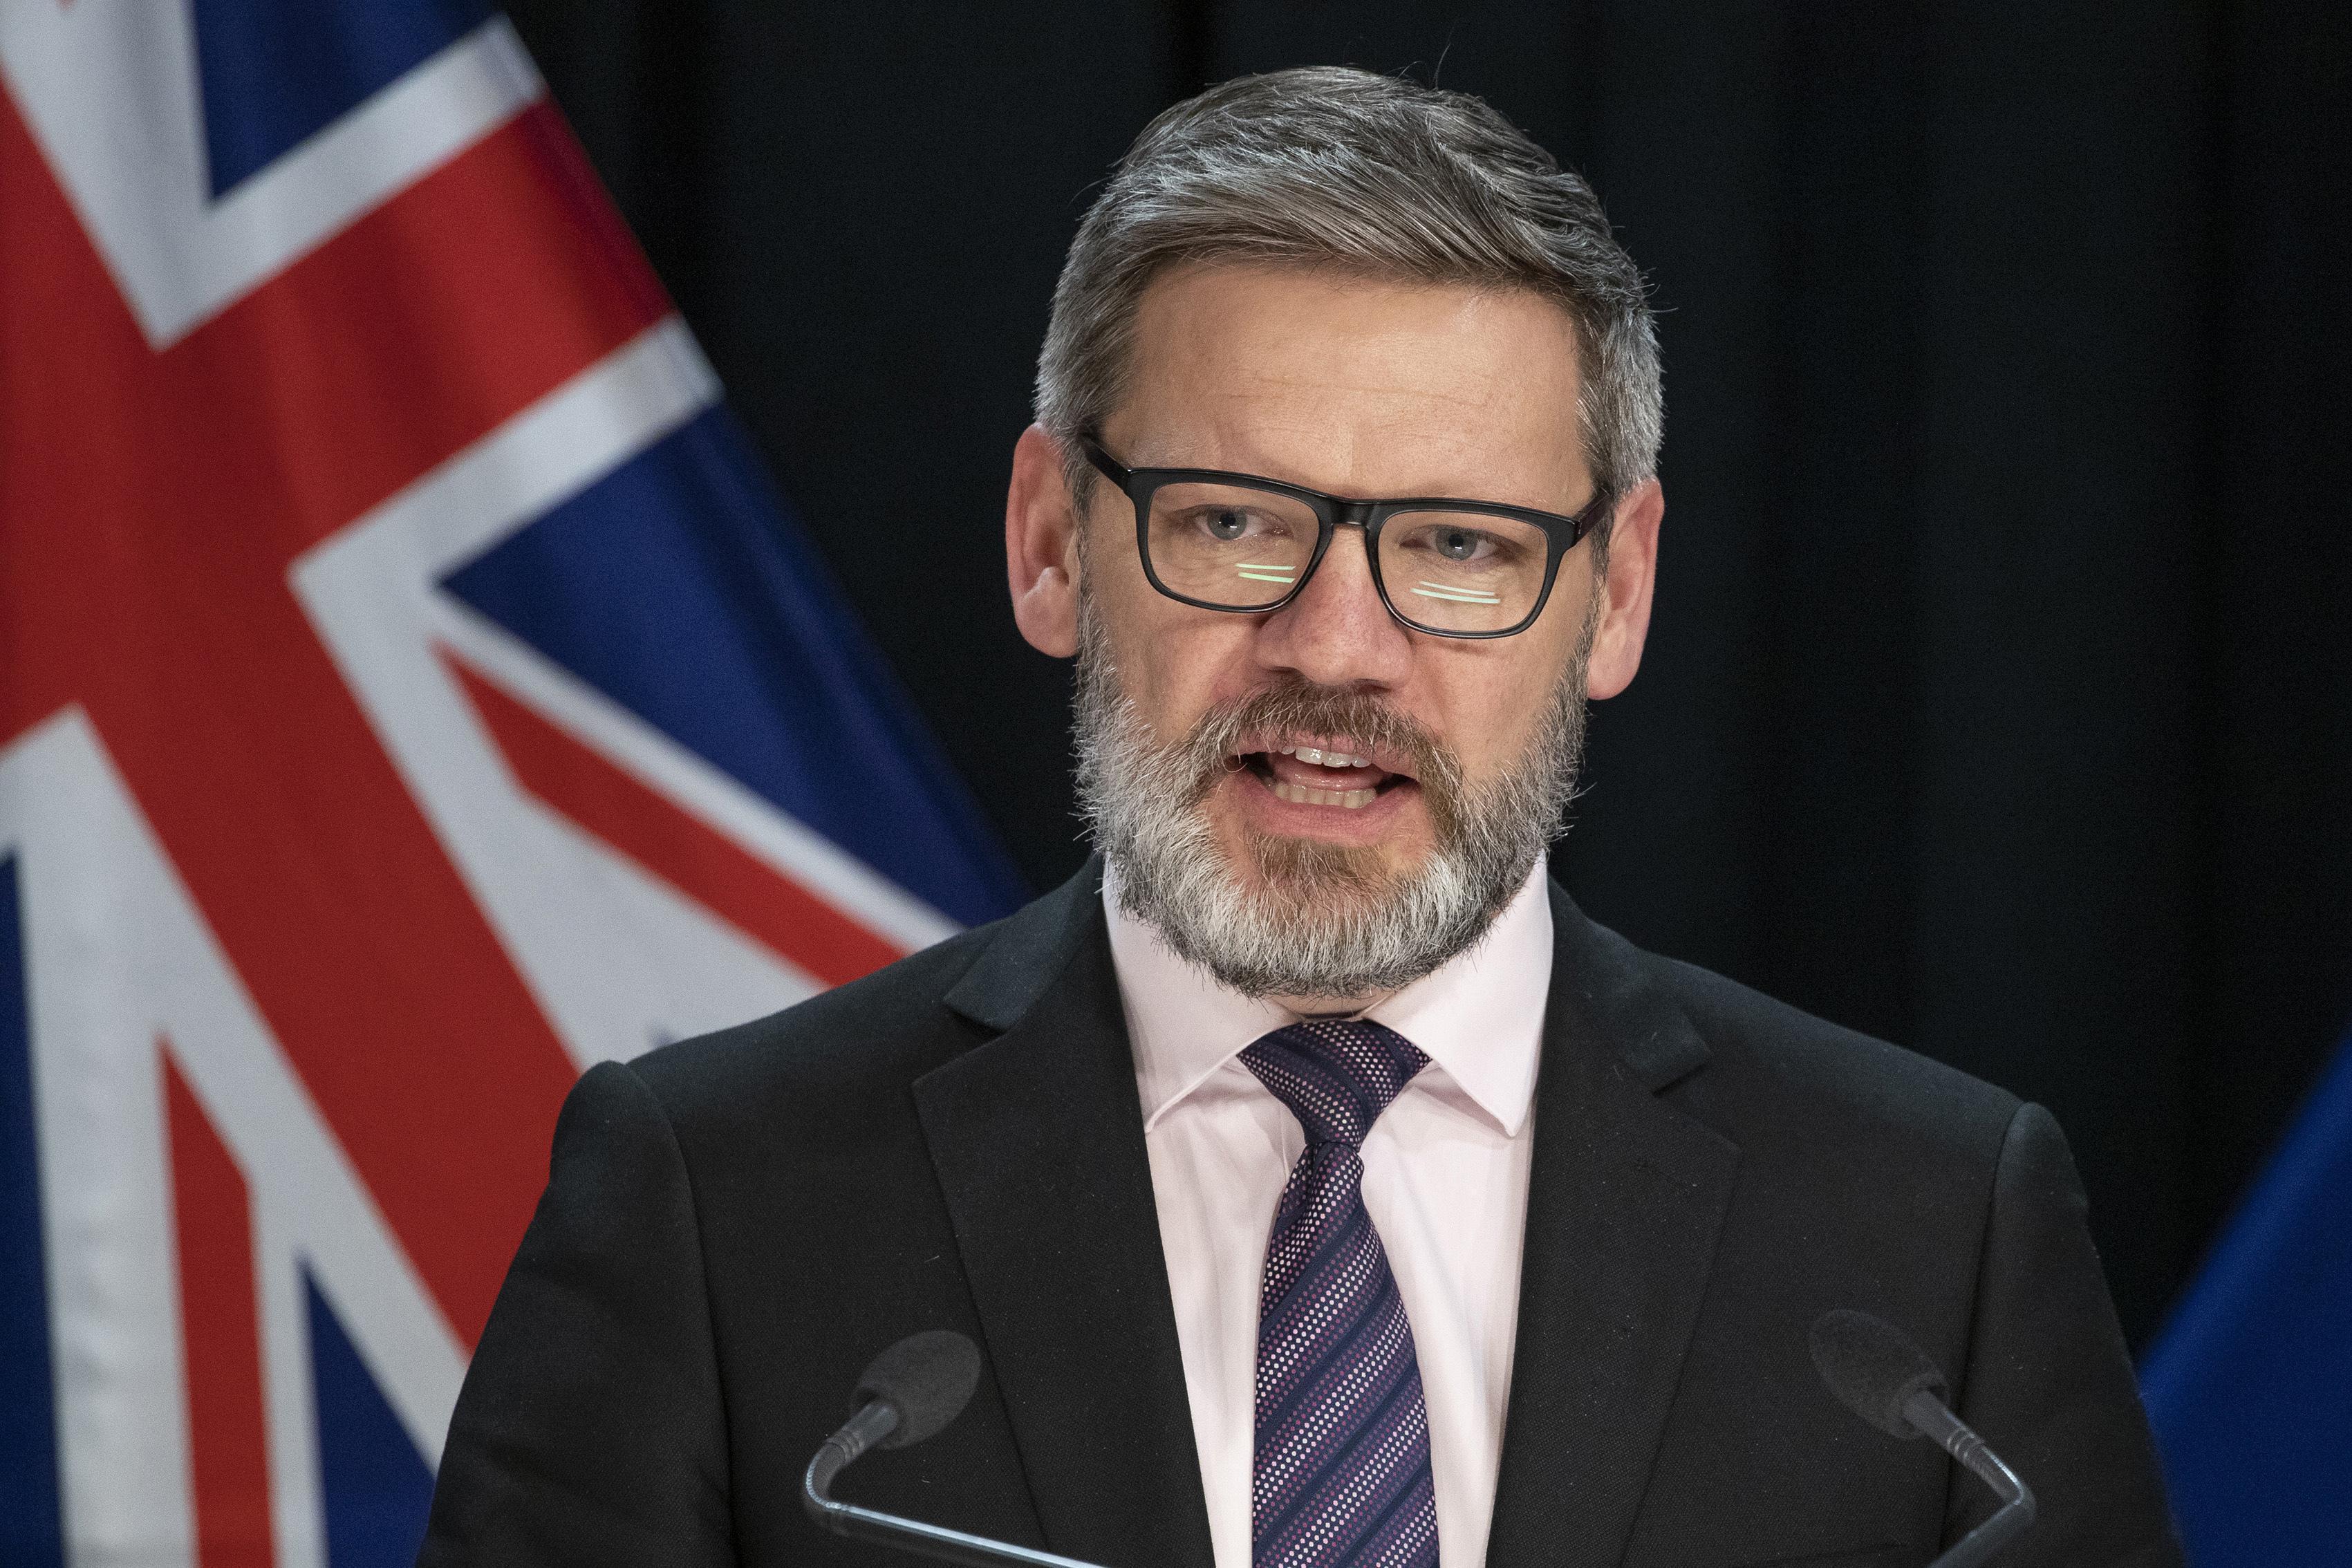 Yeni Zelanda Başbakanı Jacinda Ardern, yasak aşk yaşayan bakanı görevden aldı